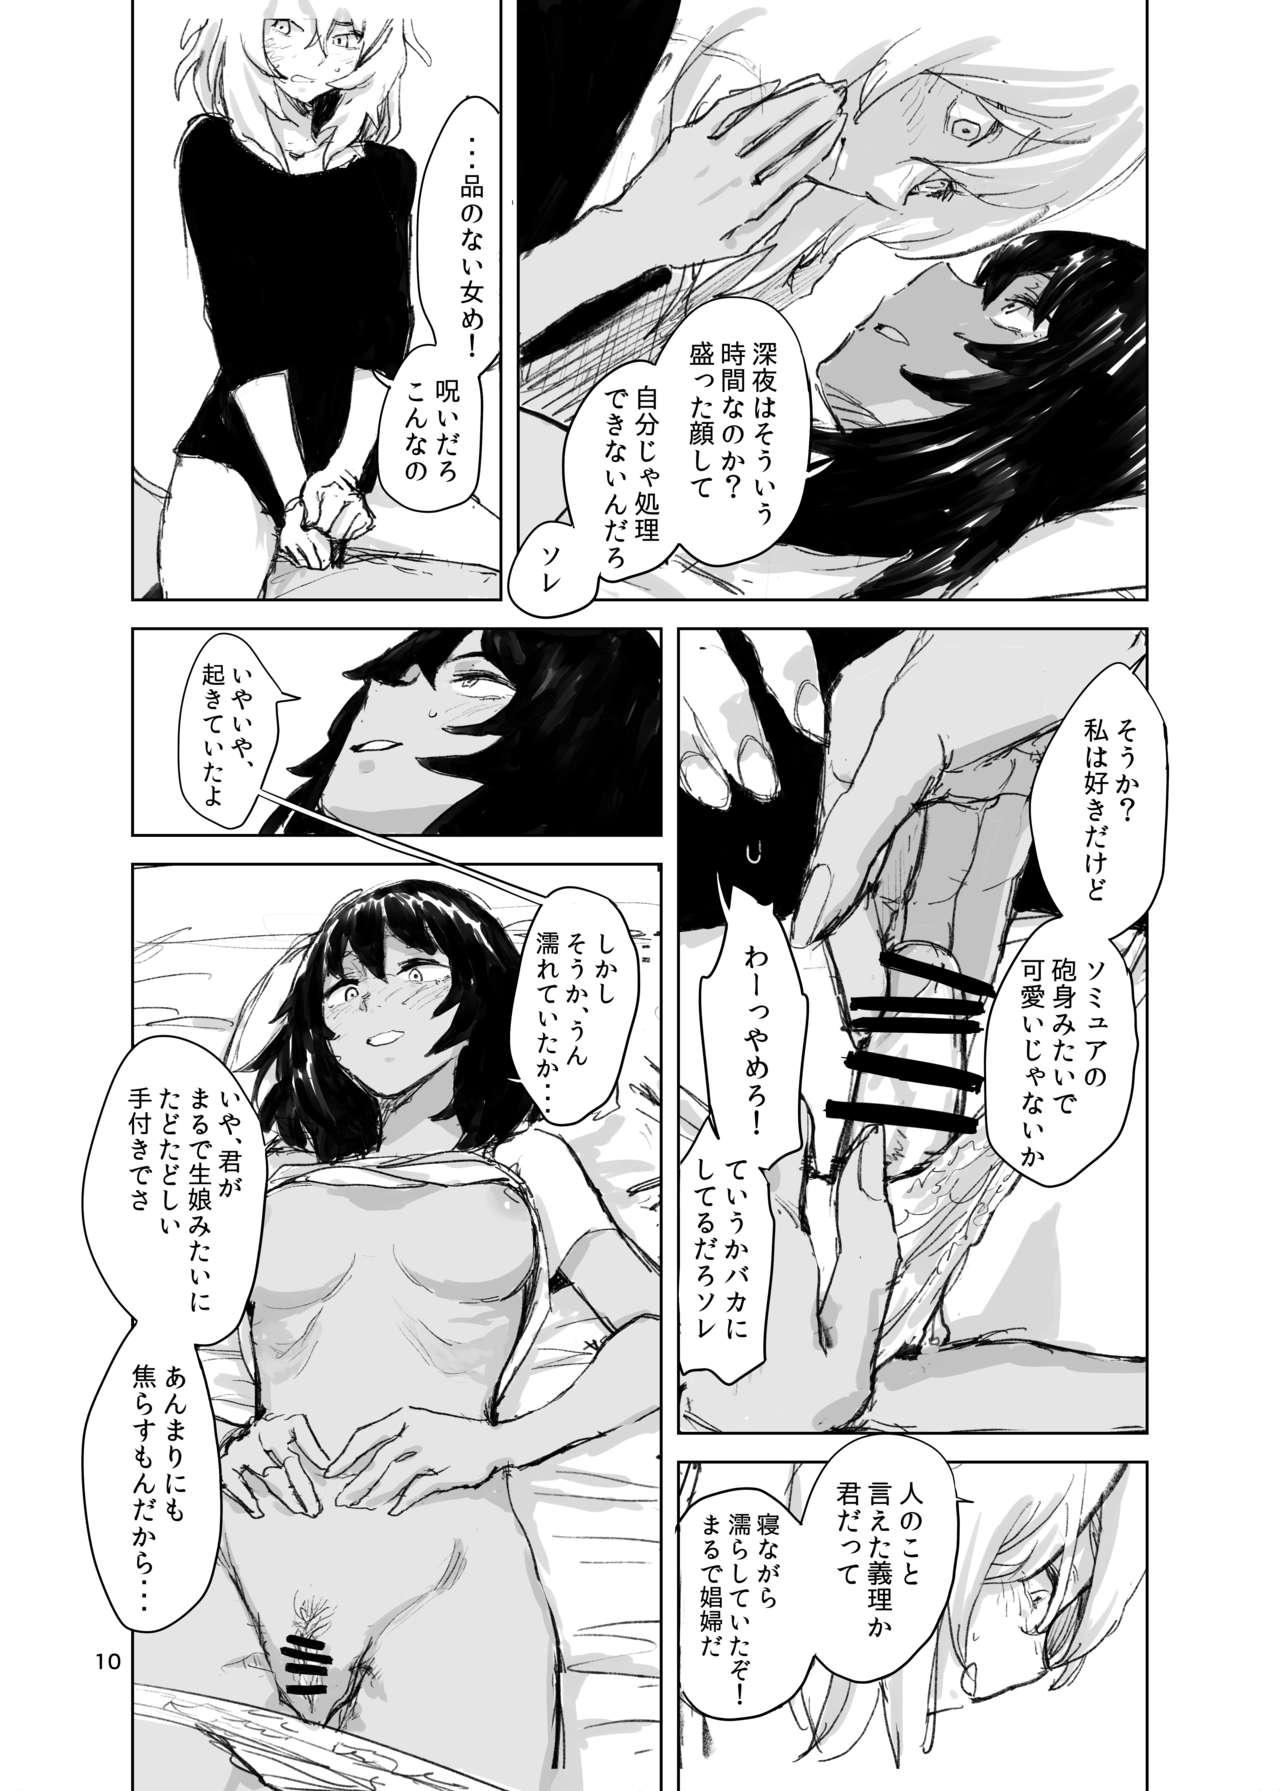 Marido Suru - Girls und panzer Oldyoung - Page 9